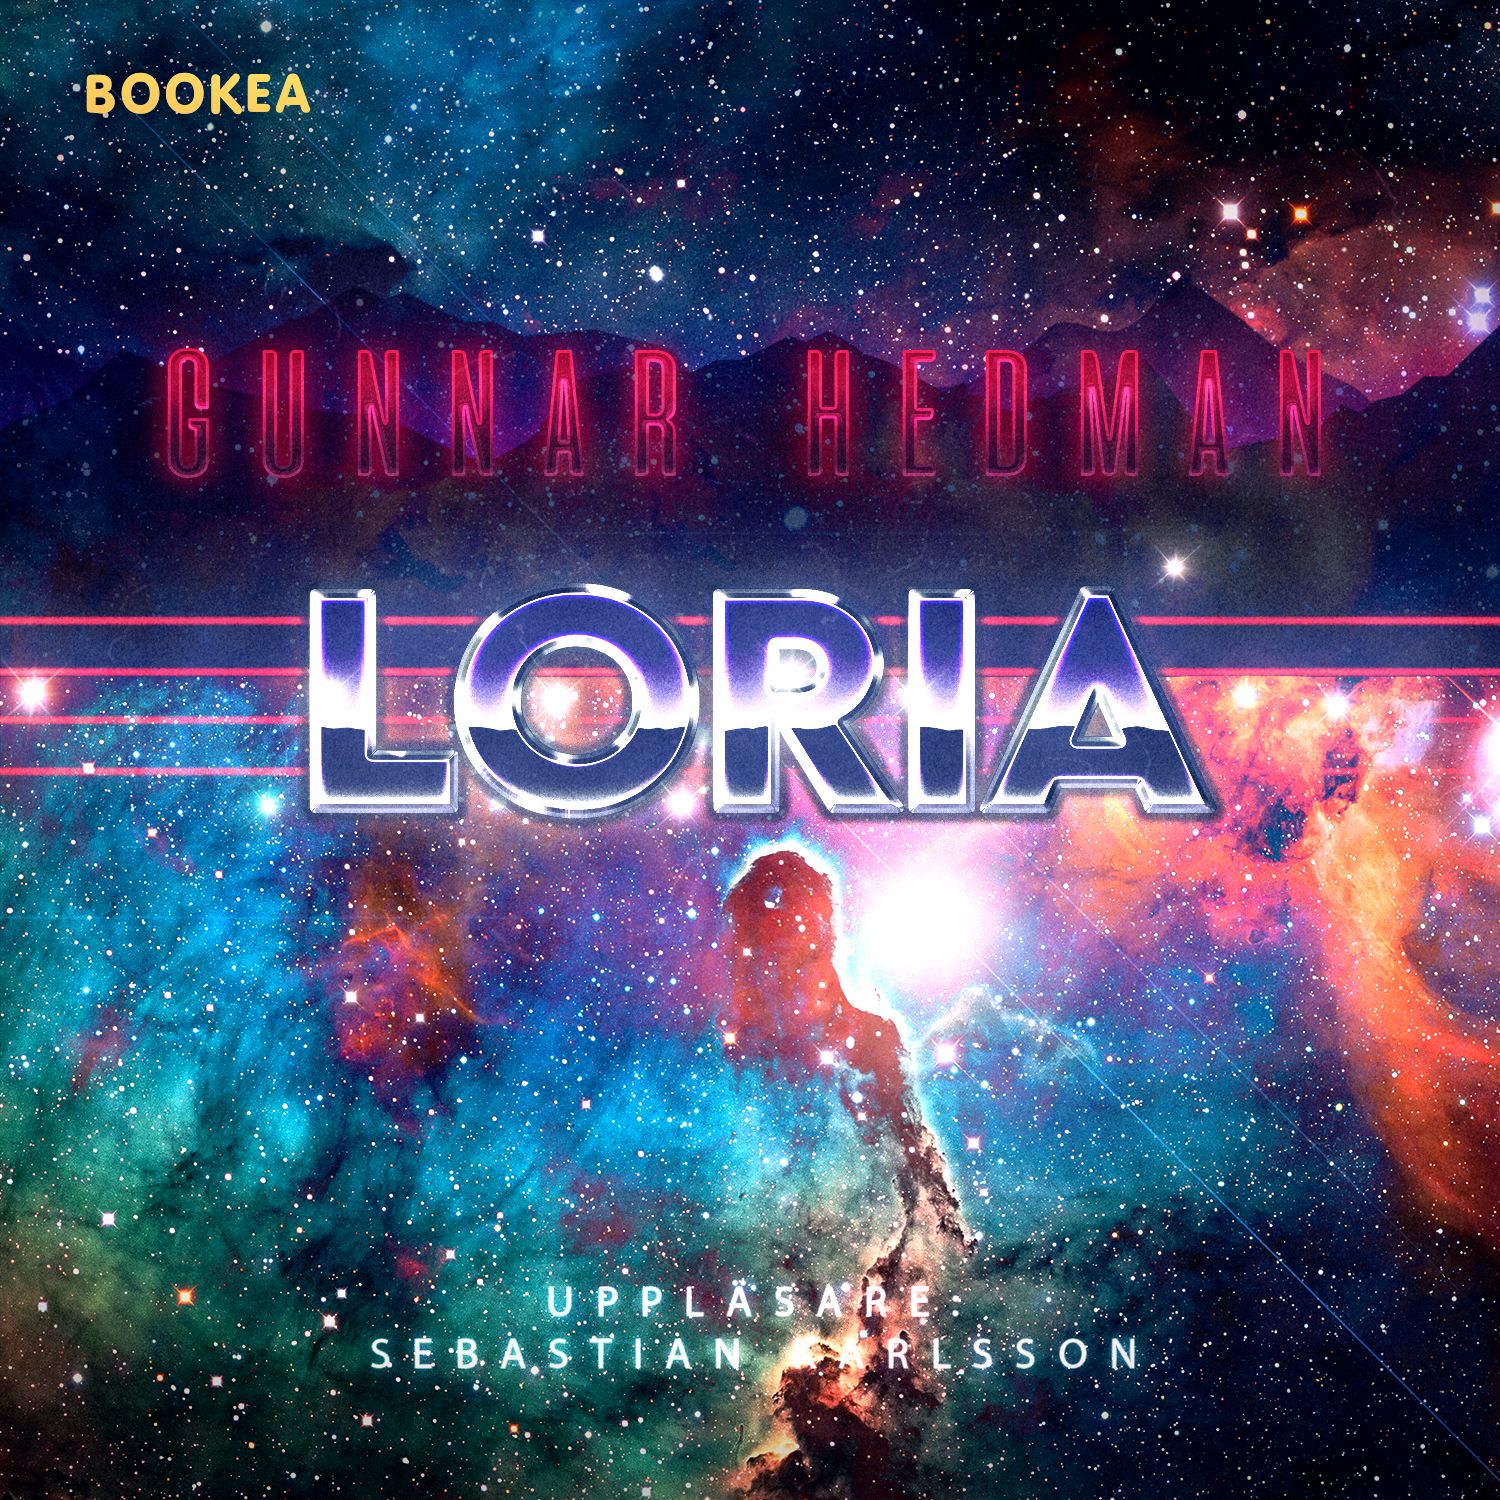 Loria, ljudbok av Gunnar Hedman